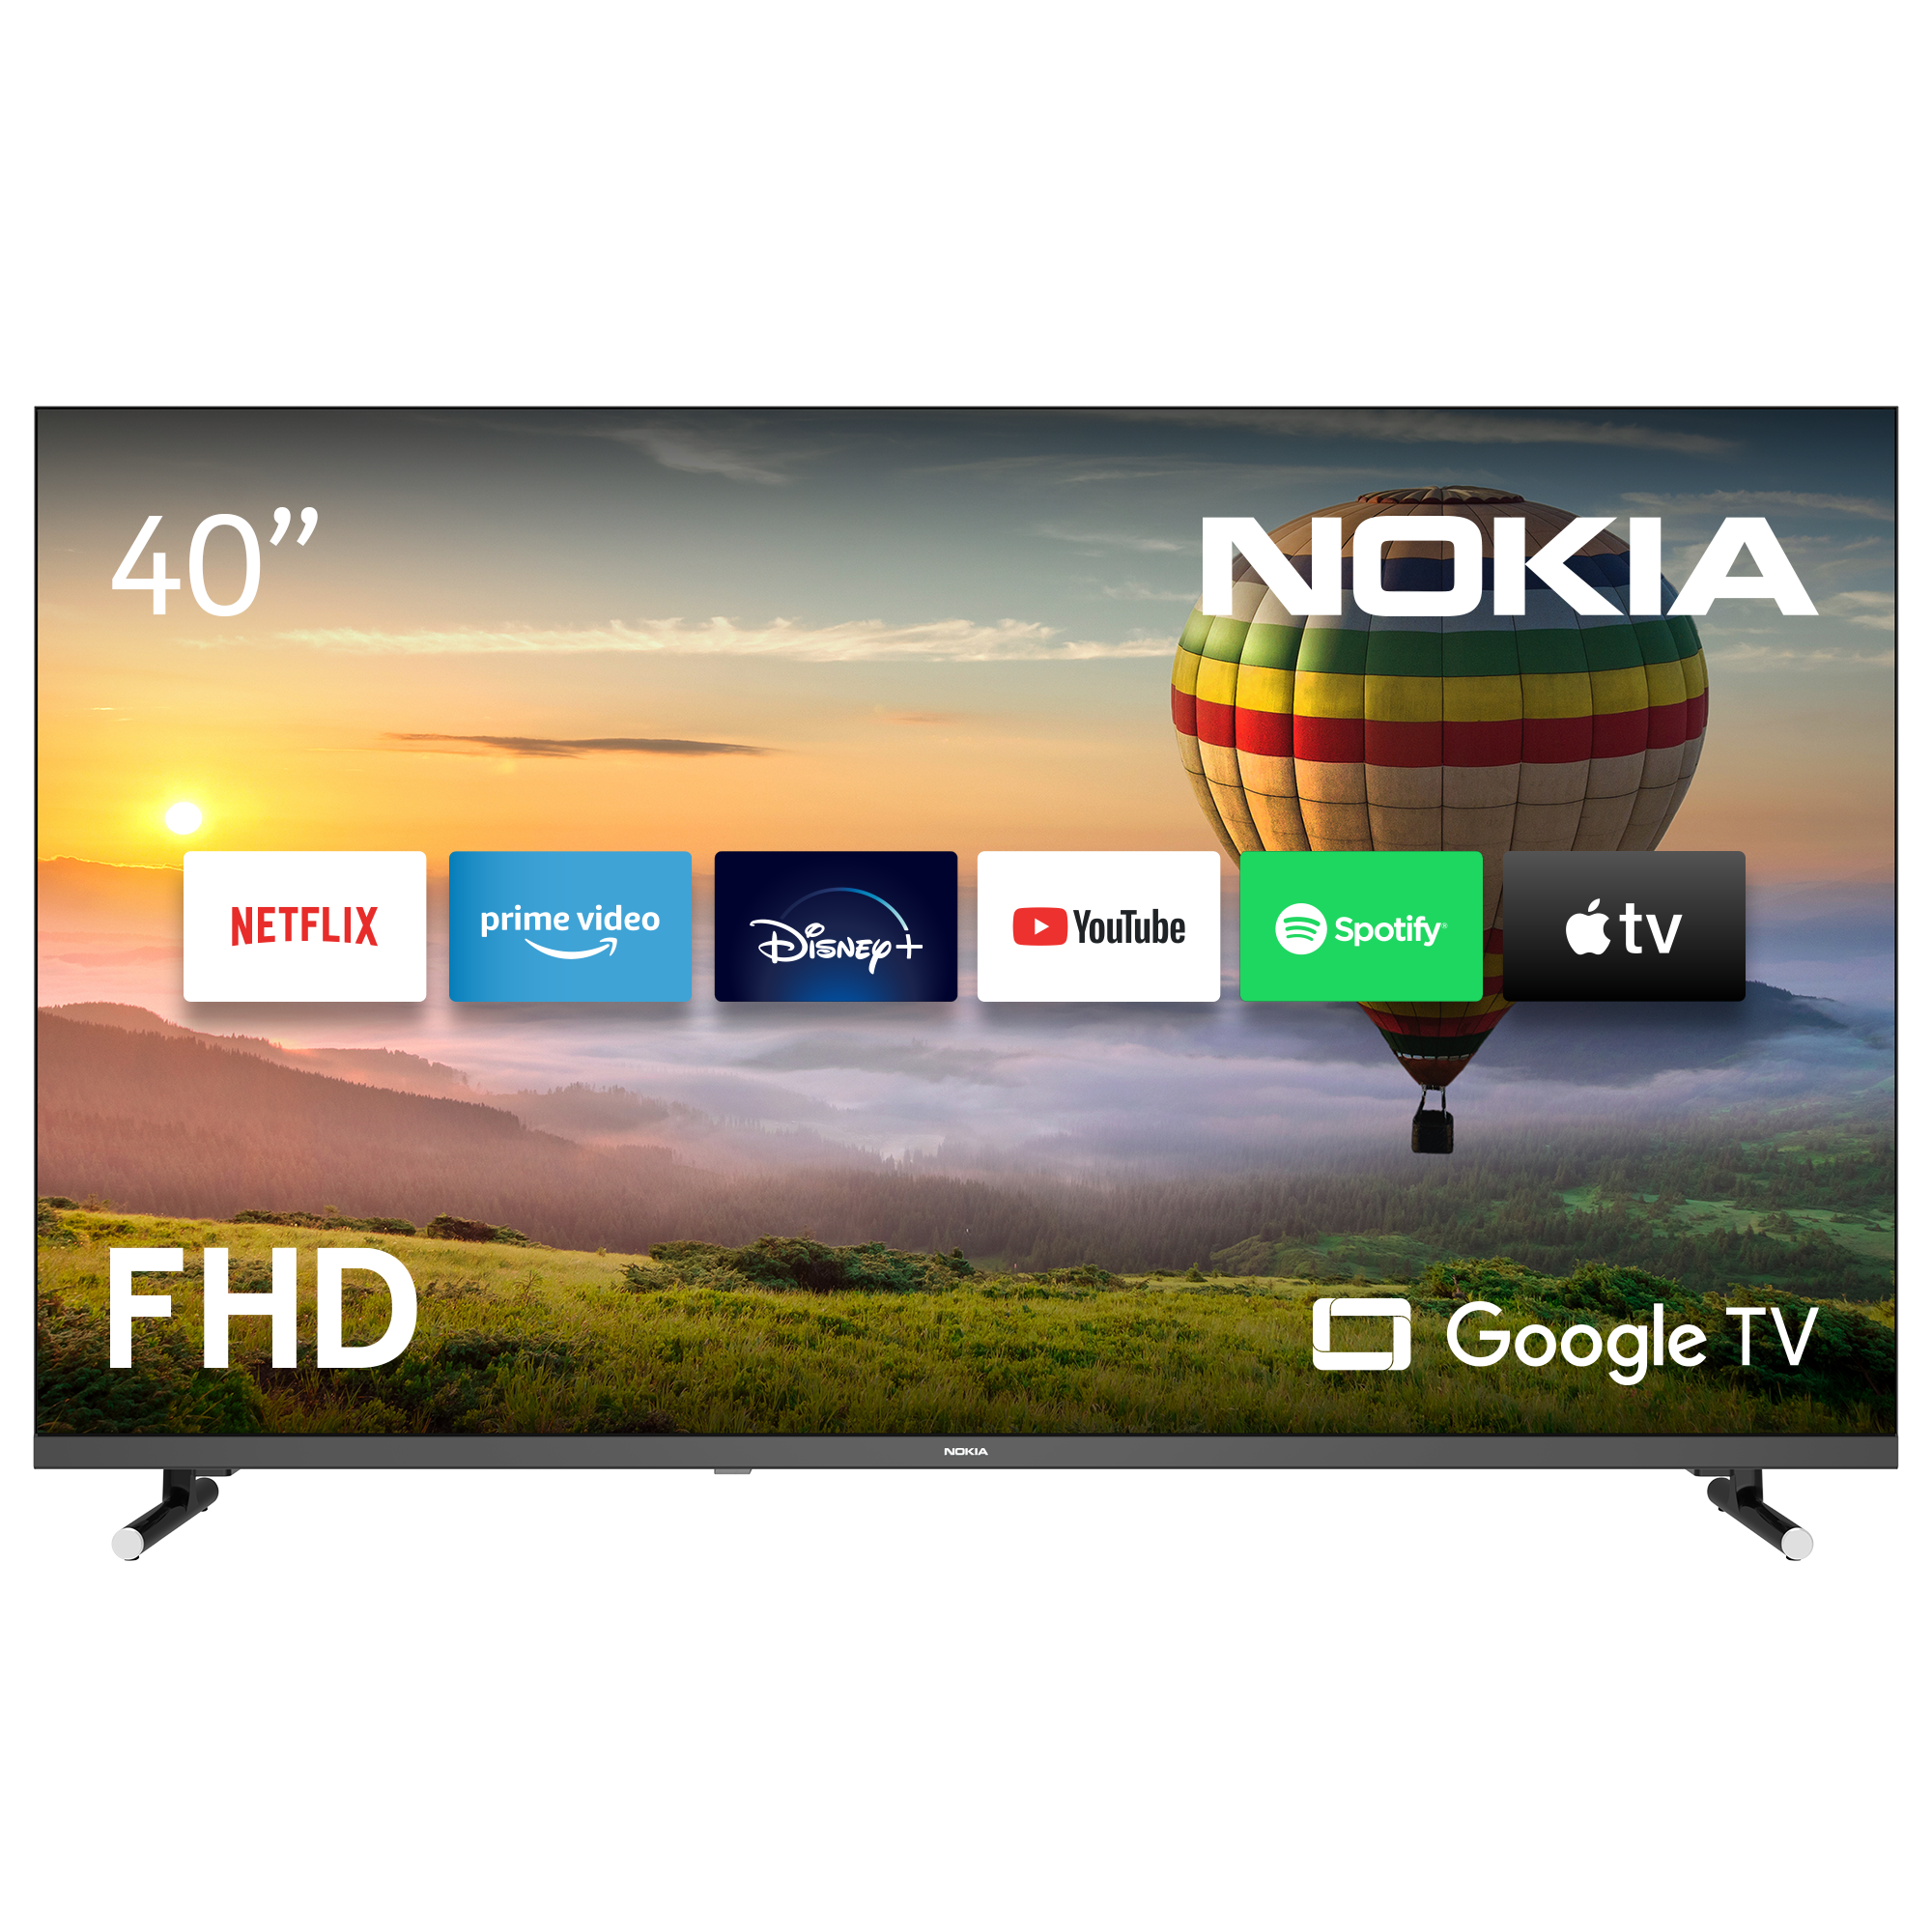 NOKIA FN40GE320 LED 101 SMART TV) Full-HD, cm, 40 (Flat, / TV Zoll